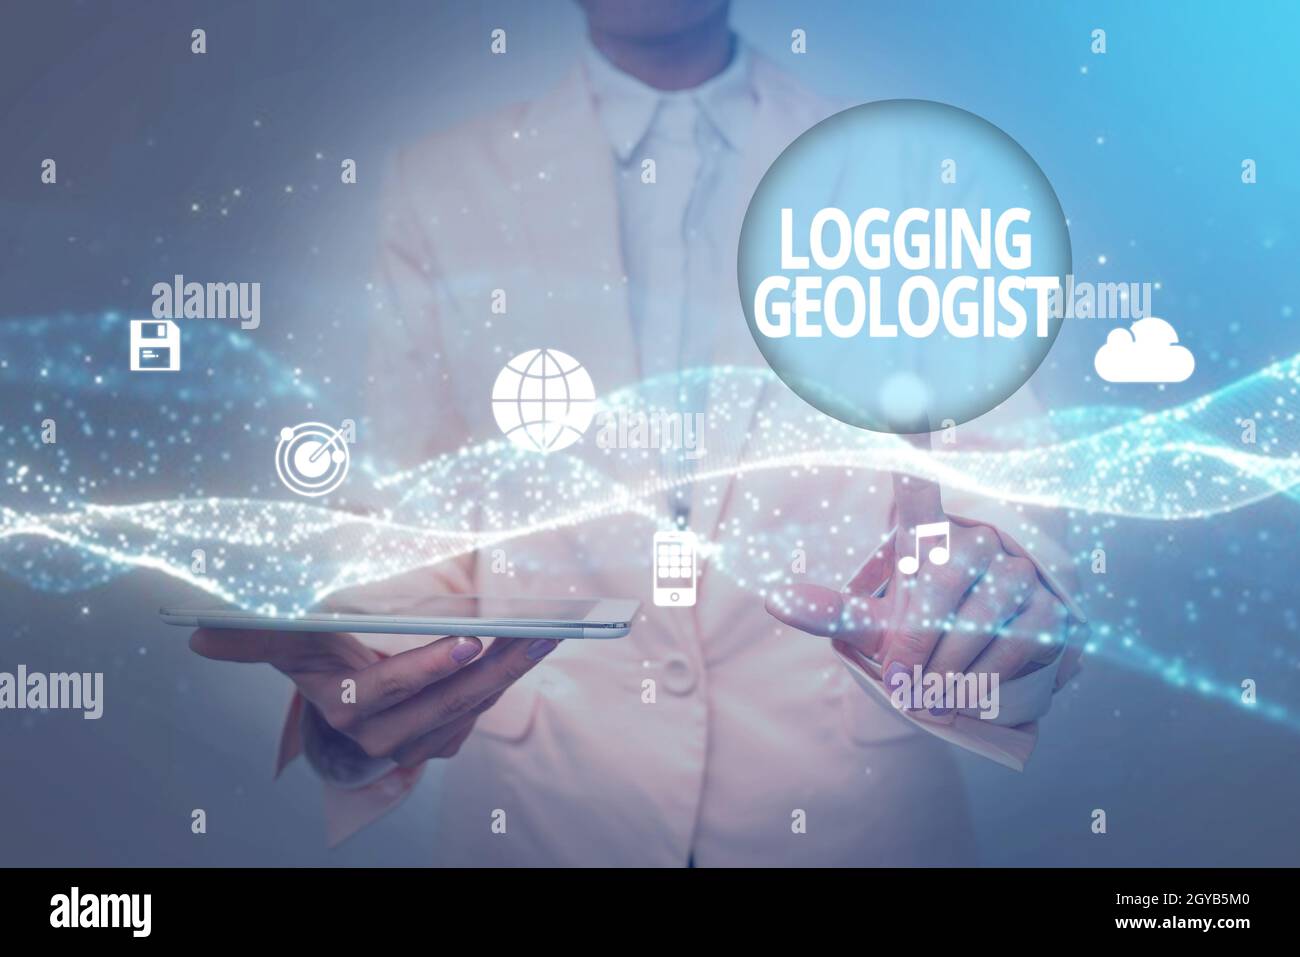 Visualizzazione concettuale Logging Geologist, Business Concept Layout ed esecuzione di definizione Diamond drill programs Lady in Uniform Holding Tablet in Han Foto Stock